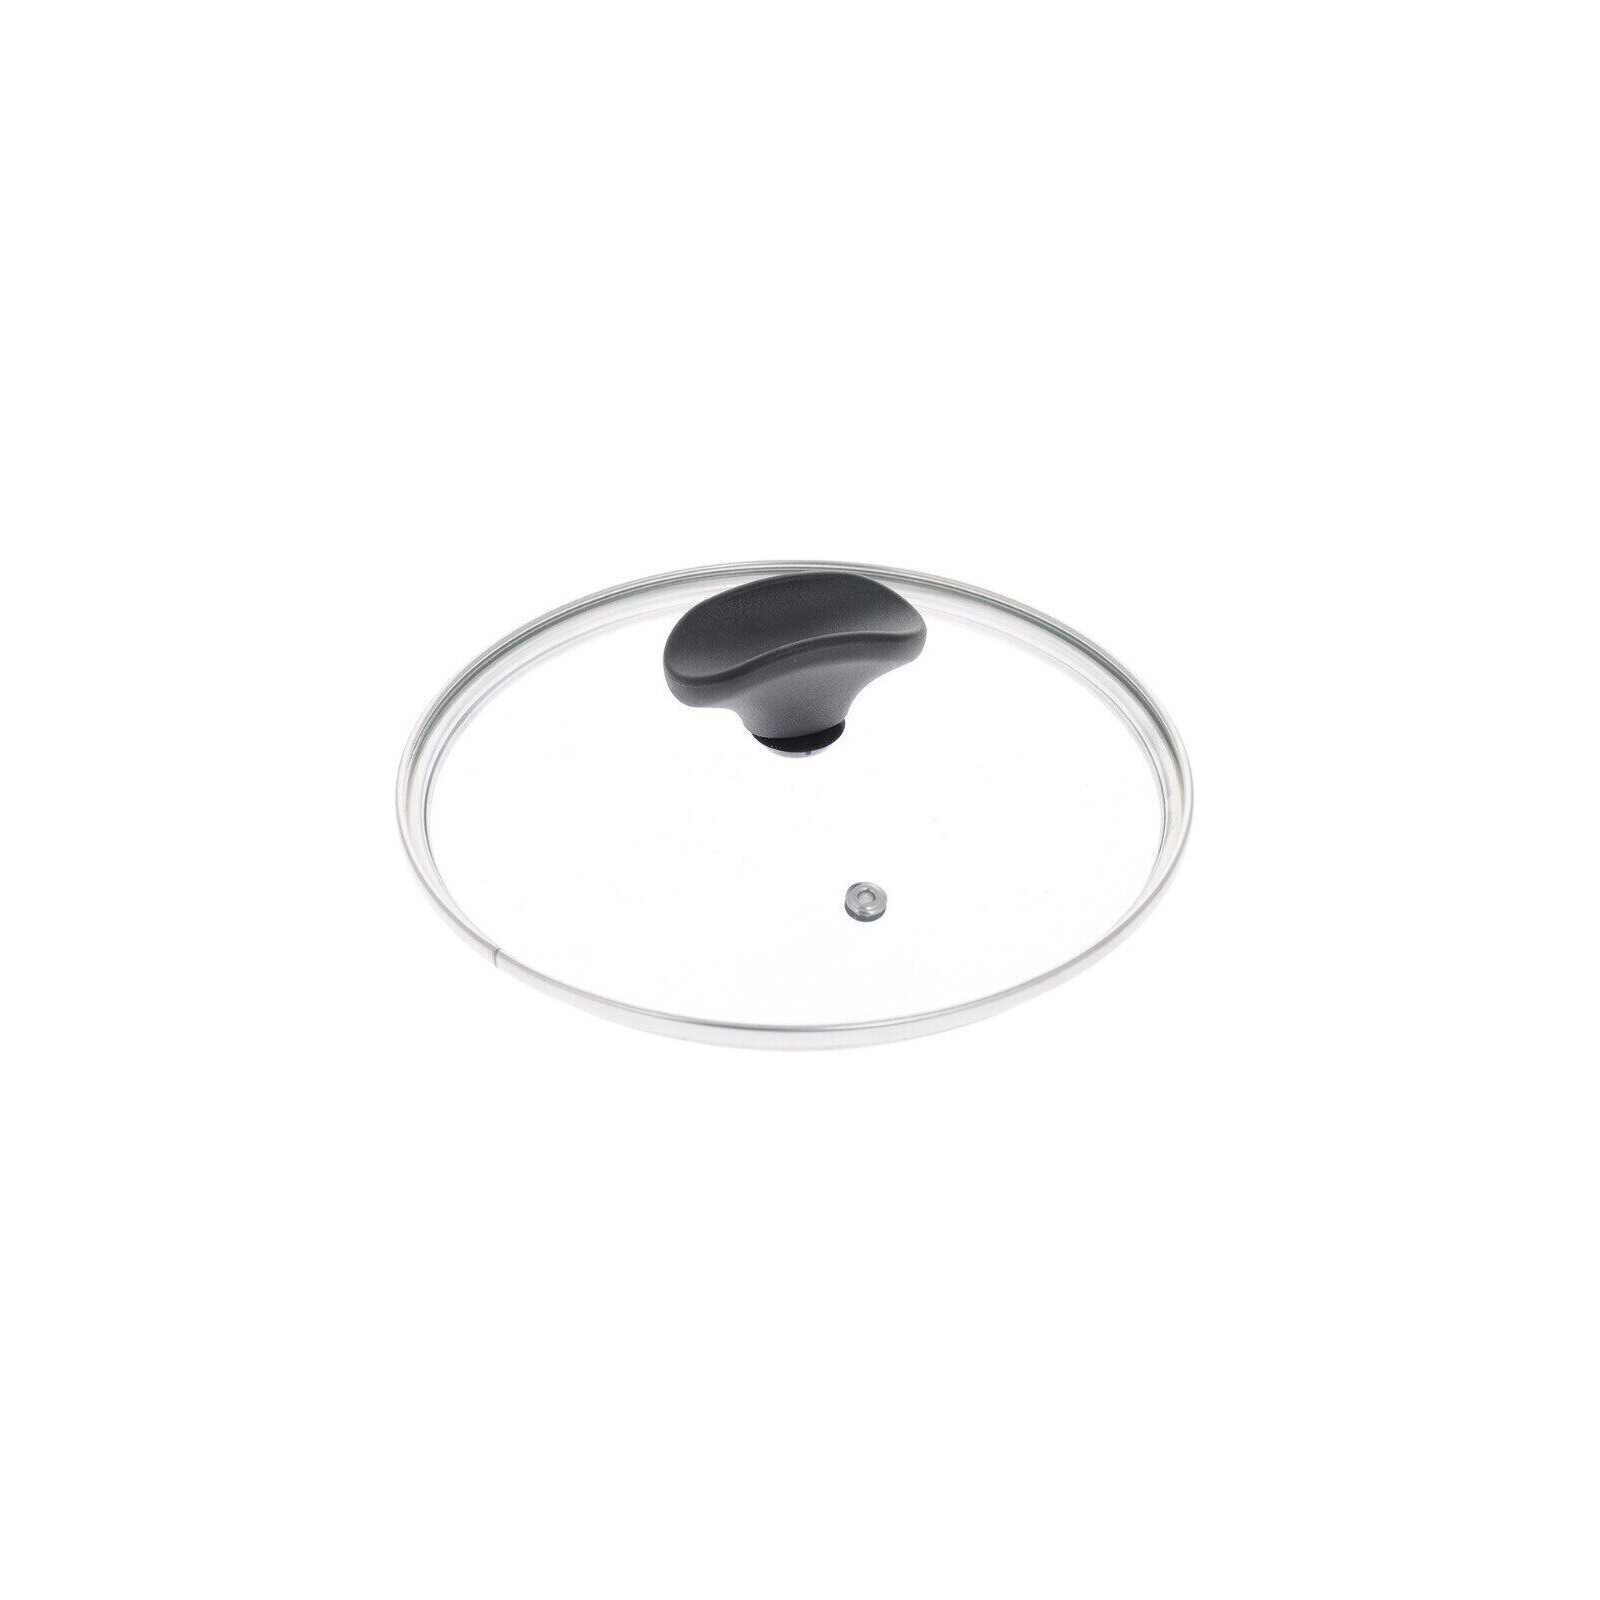 Крышка для посуды TVS Luna Induction 28 см (9465128003G601)